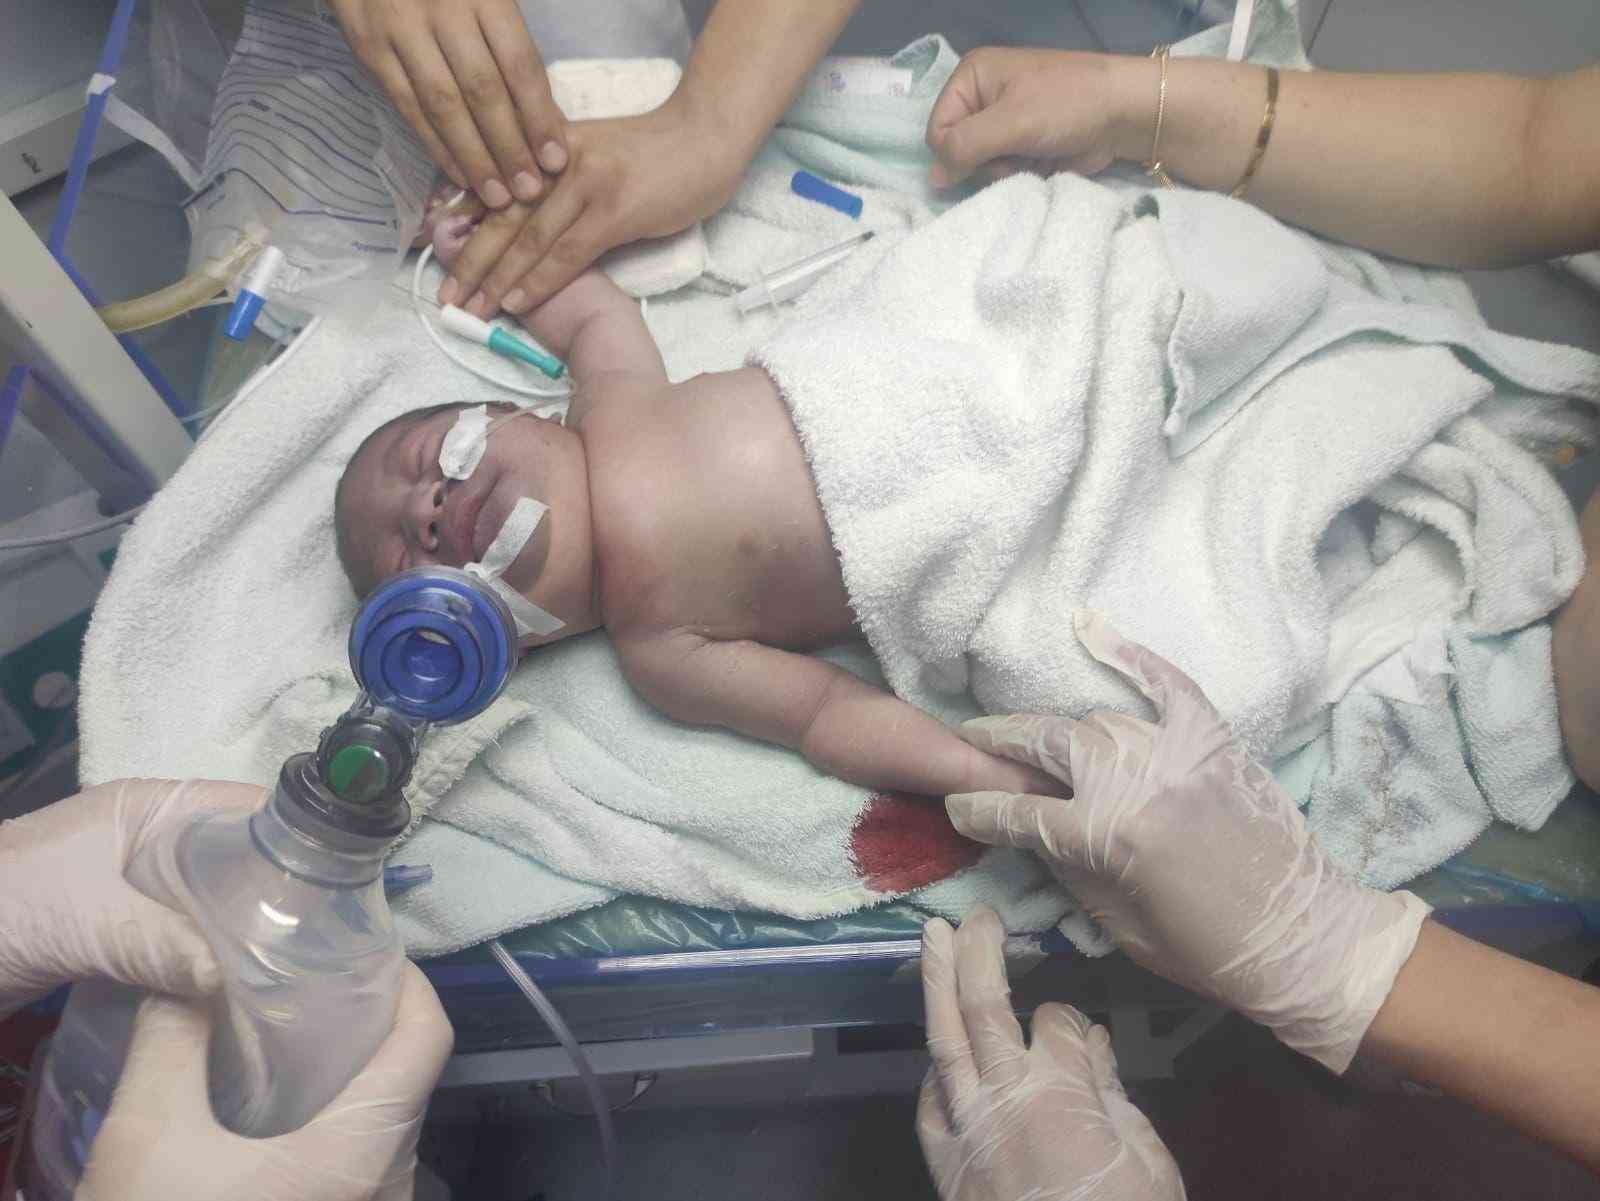 Çanakkale’nin Gökçeada ilçesinde doğuma giren bir doktorun bebeğin köprücük kemiğini kırdığı ve vücudunda morluklar oluştuğu iddia edildi ...